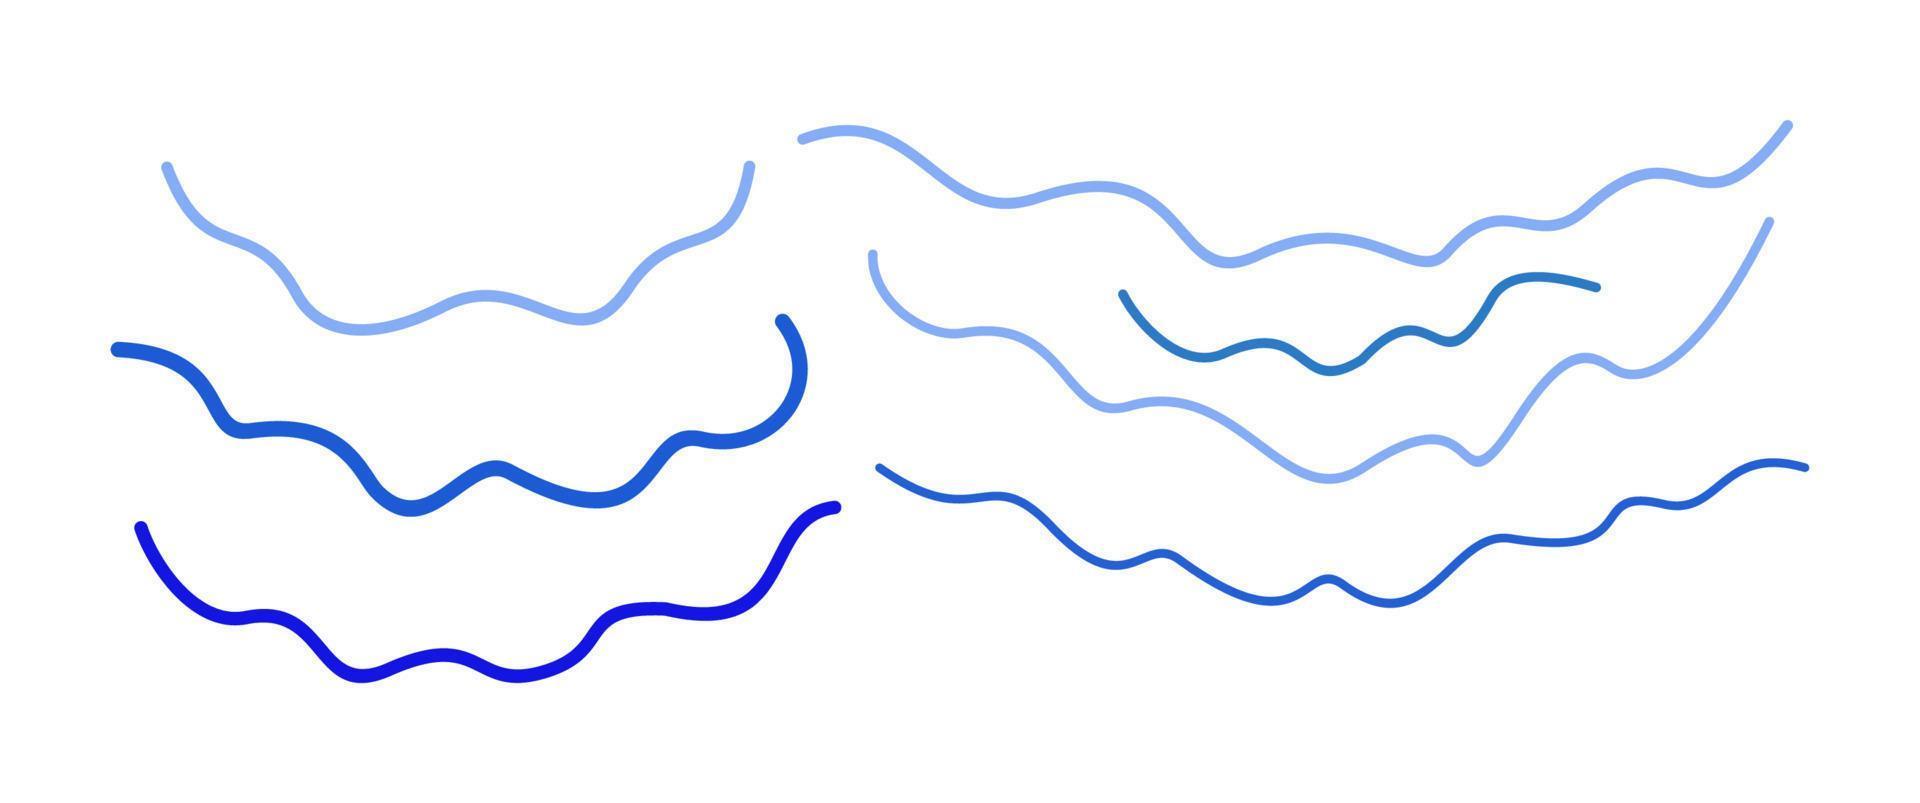 conjunto de vetores de ondas azuis. linhas curvas de várias formas.